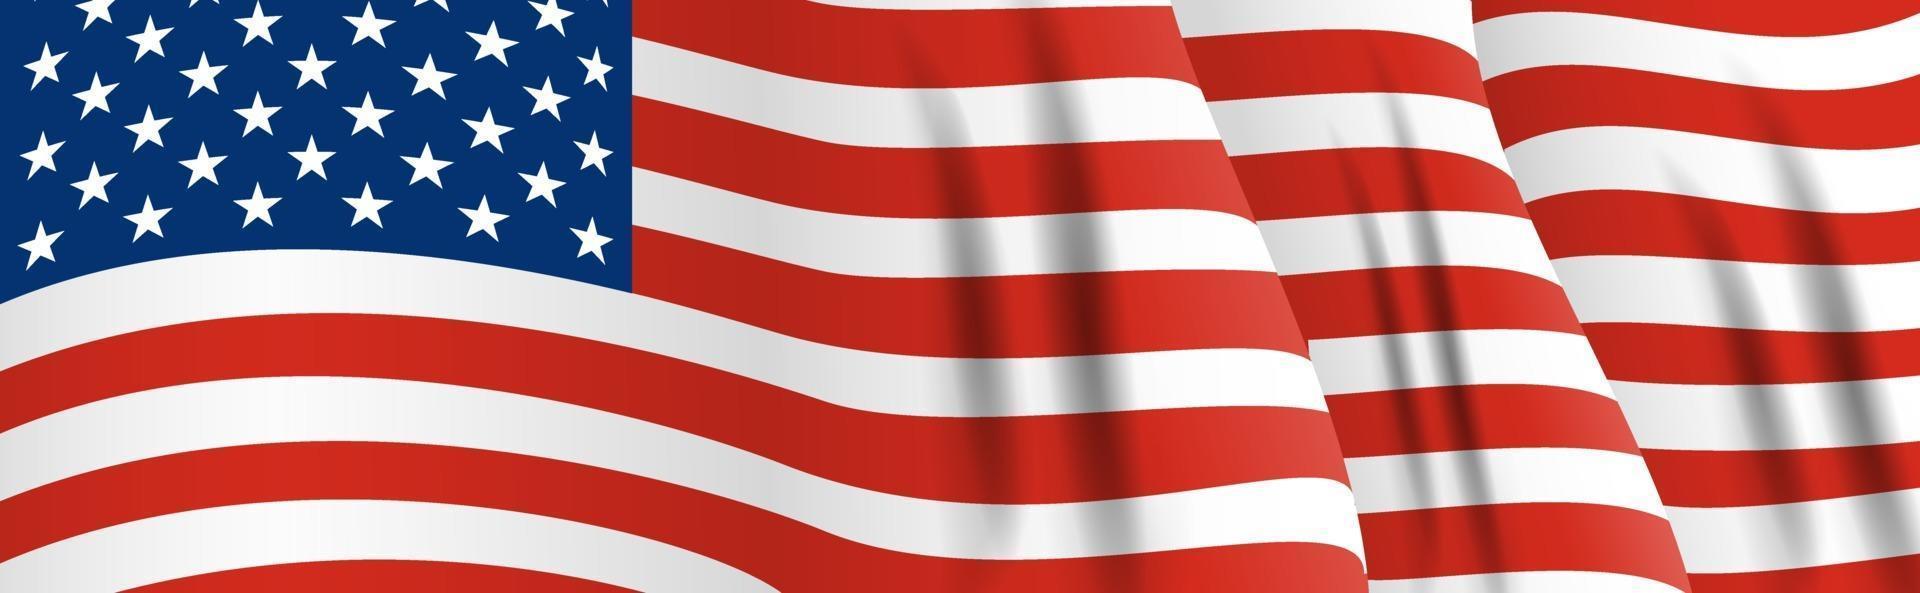 bandera nacional de américa. agitando la bandera de Estados Unidos de cerca. vector